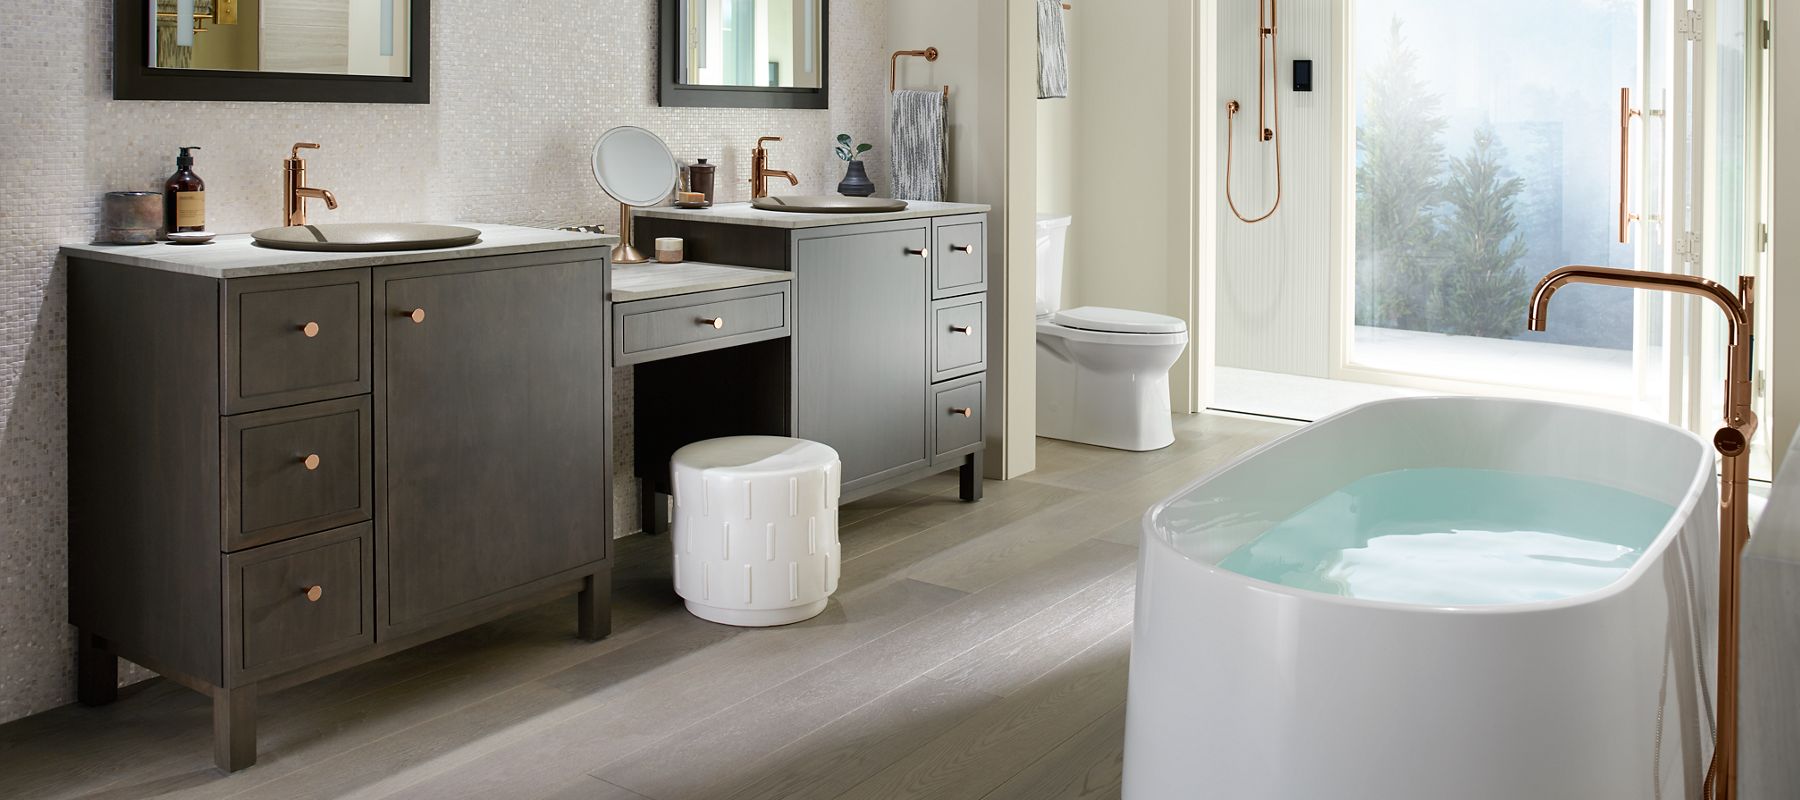 Kohler Bathroom Cabinets 2020 Home Comforts